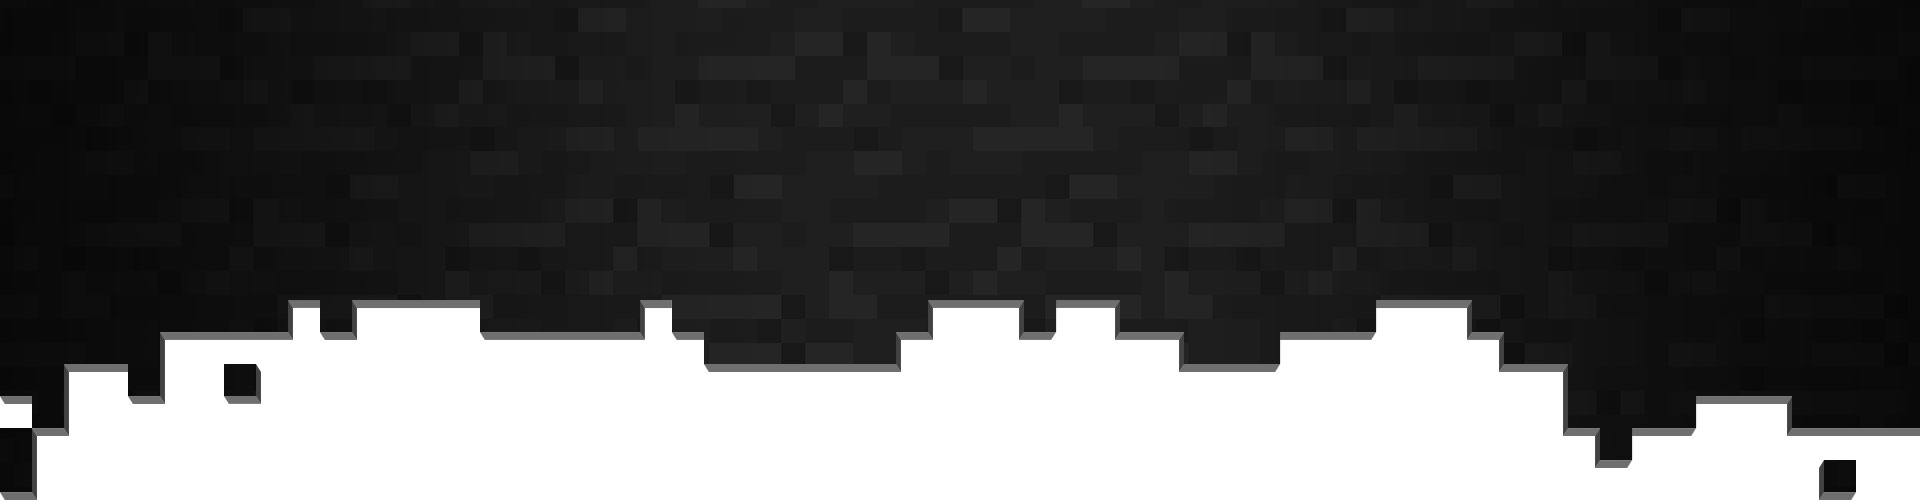 Μαύρα και γκρι pixel